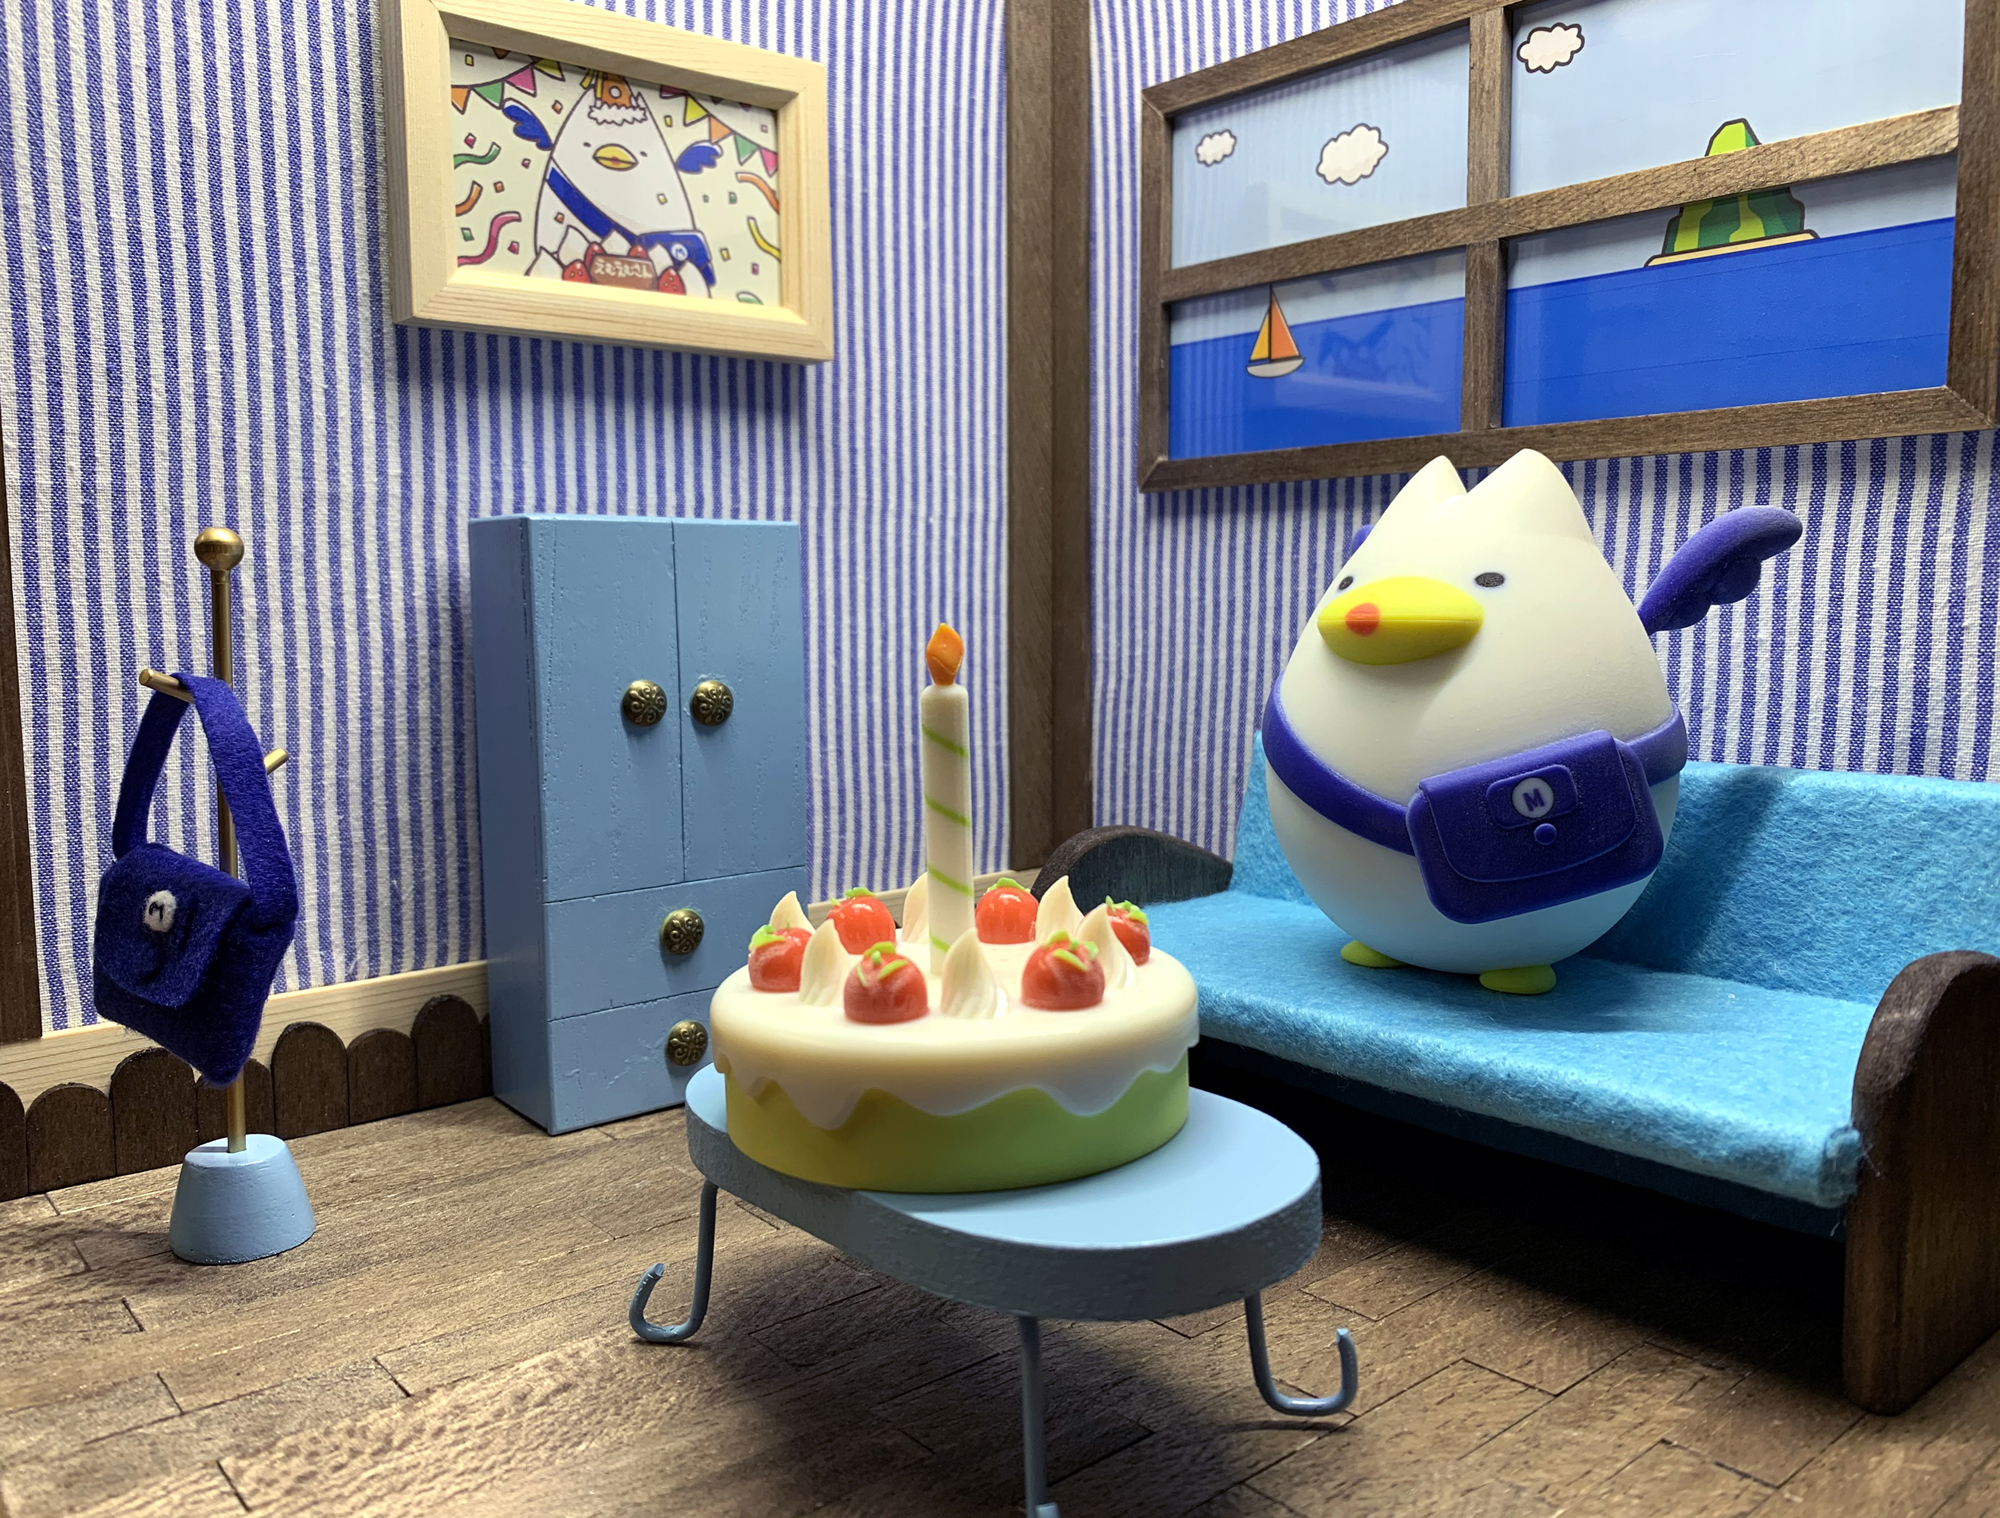 みなとみらい線キャラクター えむえむさん お誕生日記念の えむえむさん 人形と バースデーケーキ 制作にストラタシスのフルカラー3d プリンタ J850 が採用 株式会社ストラタシス ジャパンのプレスリリース